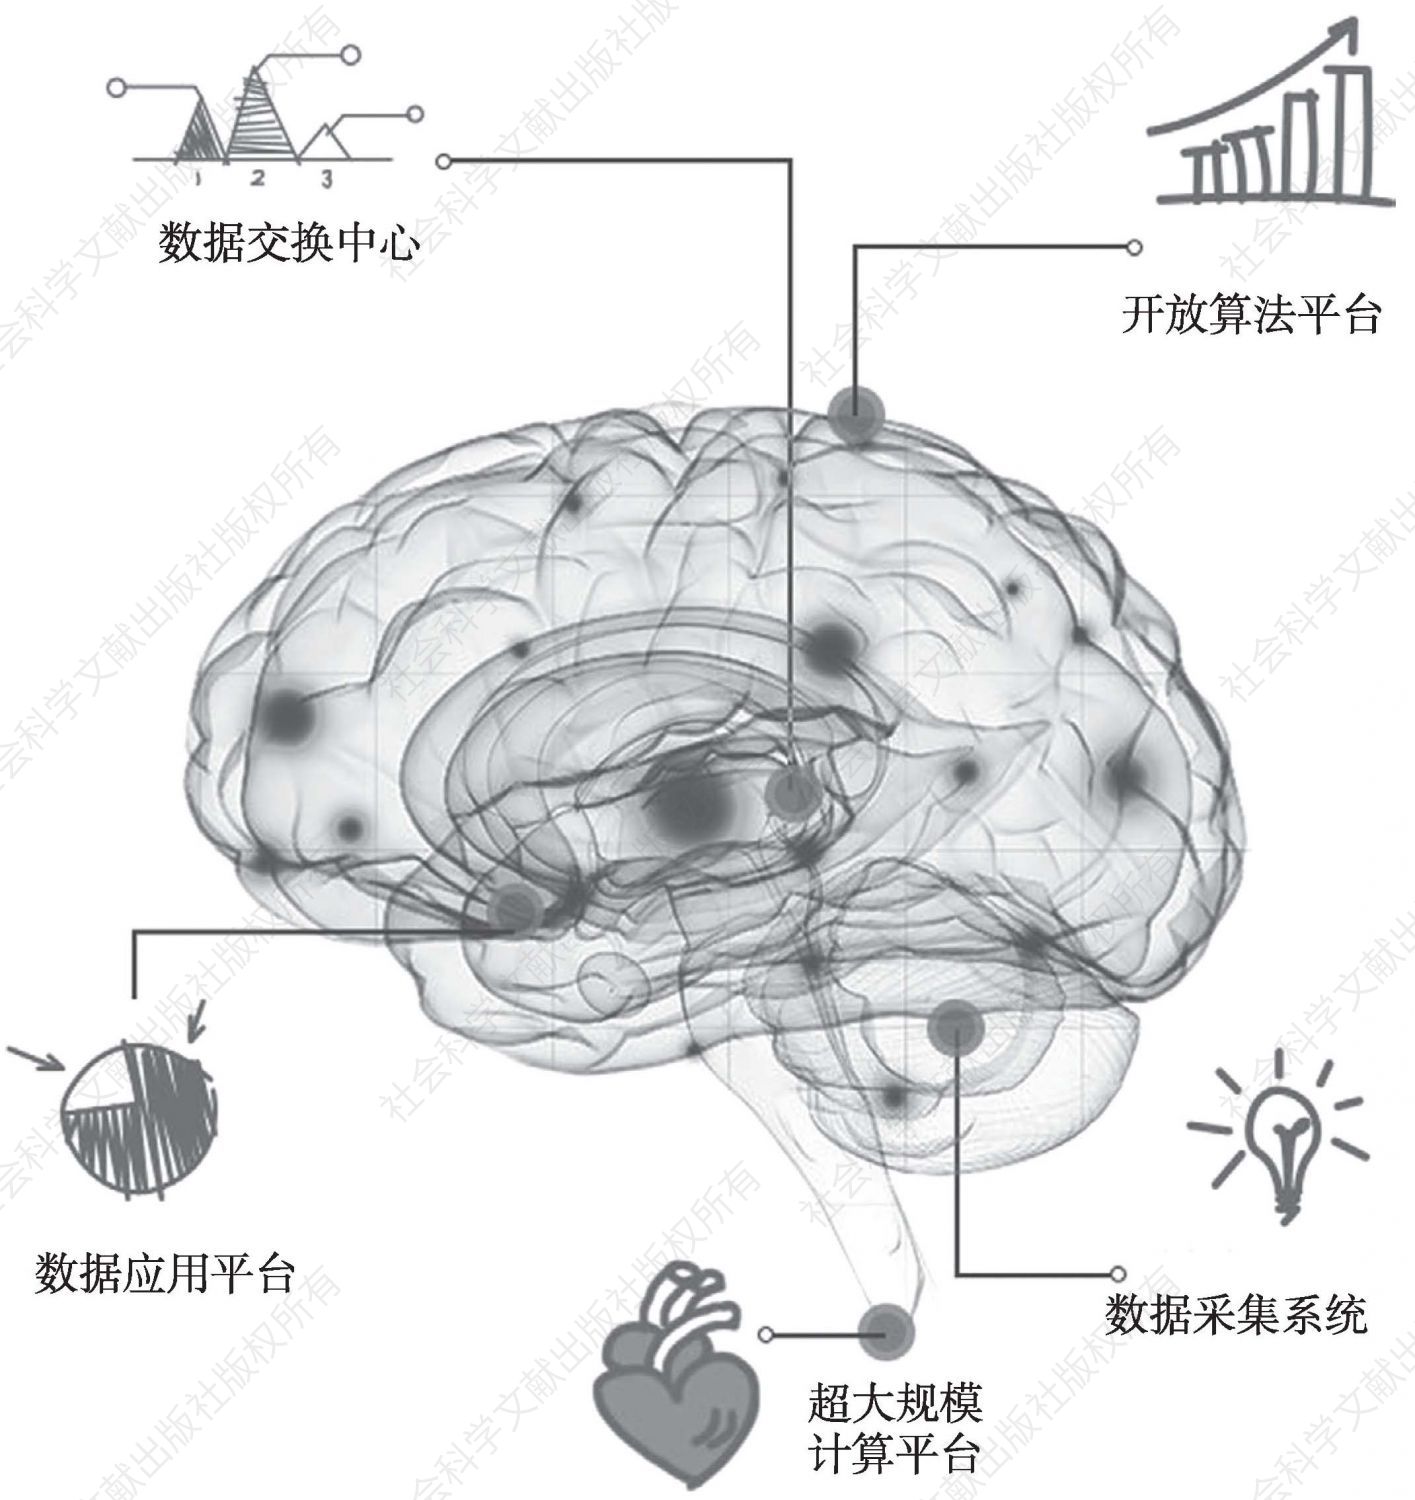 图1 “城市大脑”系统示意